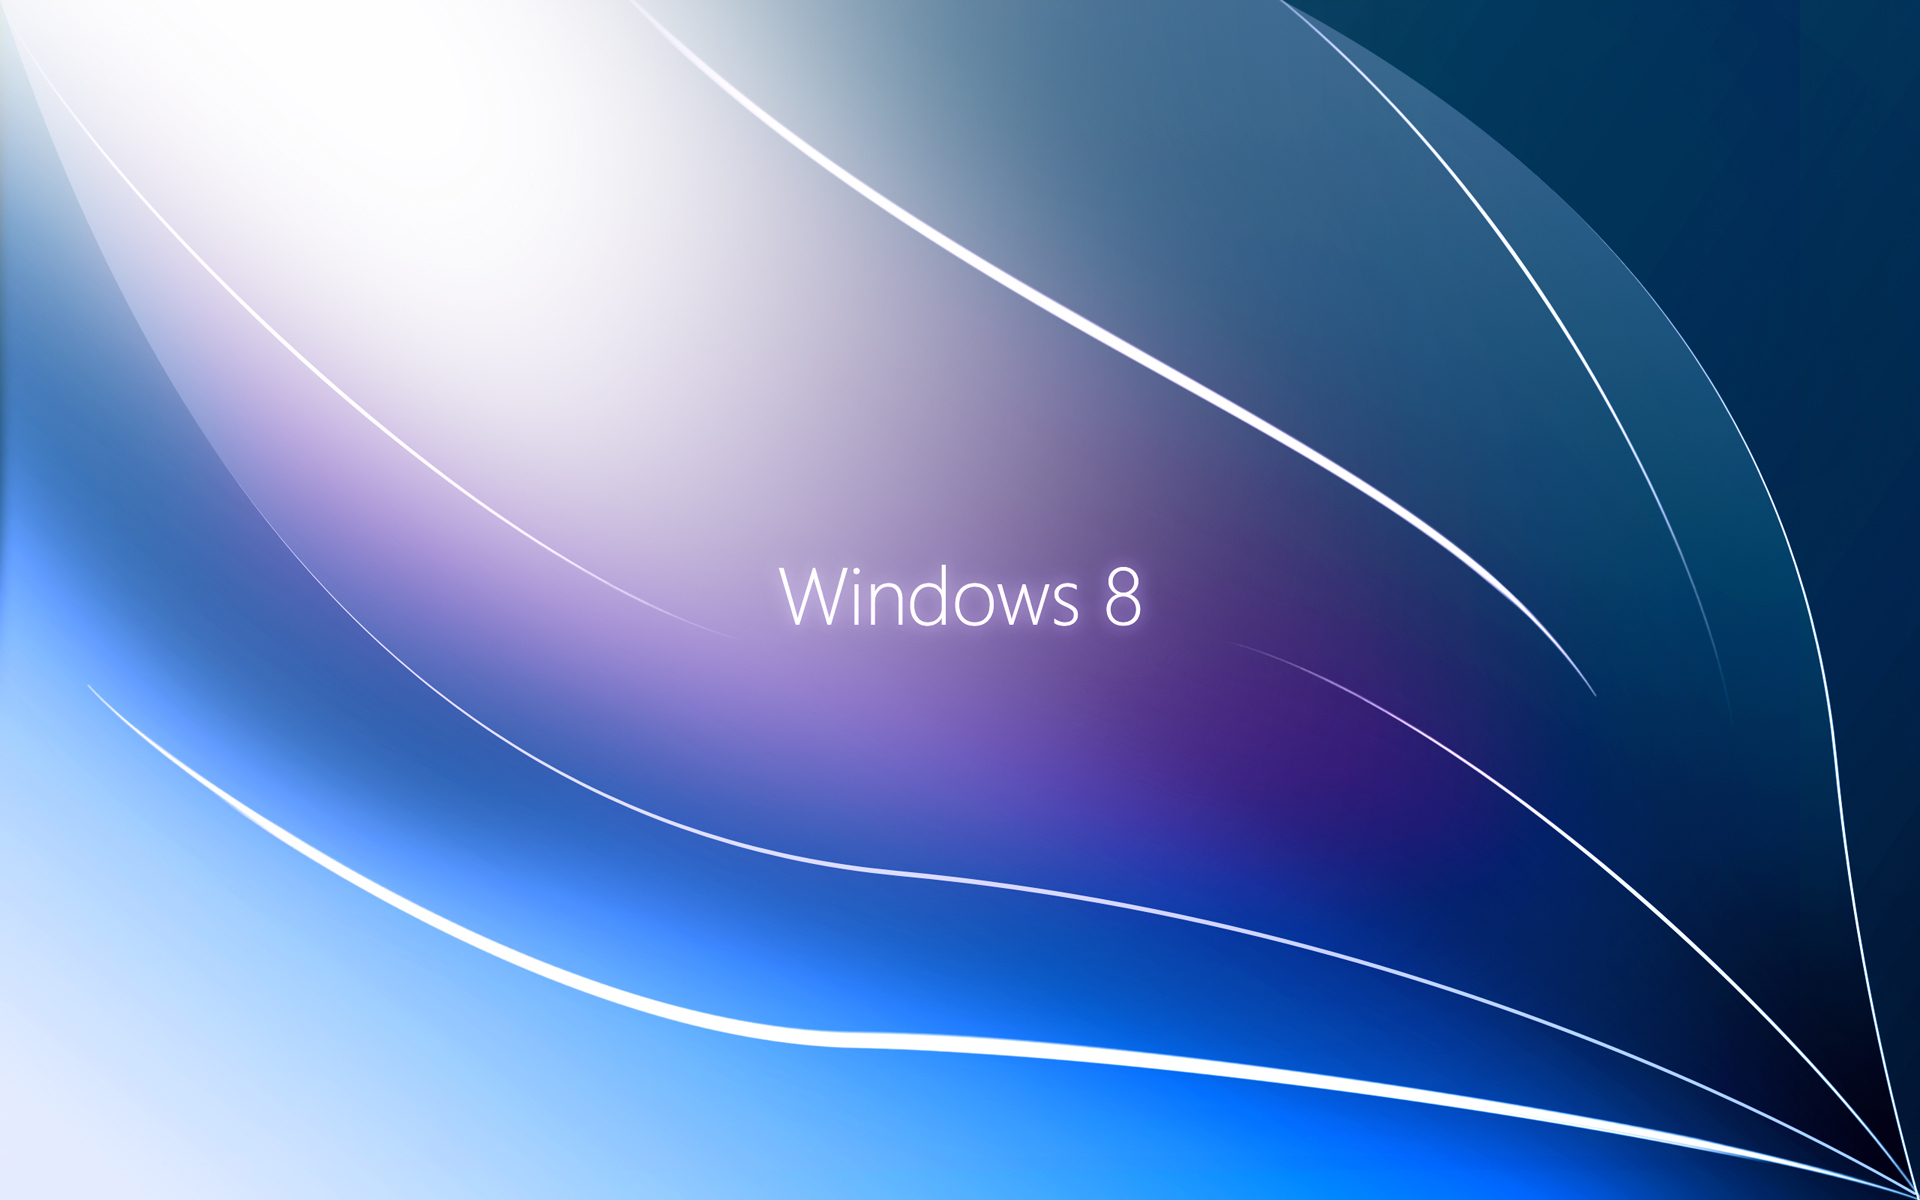 Hình nền Windows 8 với độ phân giải cao sẽ làm cho máy tính của bạn trông rất đẹp mắt và chuyên nghiệp. Nếu bạn yêu thích sự đơn giản và tinh tế, hình nền Windows 8 sẽ là lựa chọn hoàn hảo để trang trí desktop của bạn.